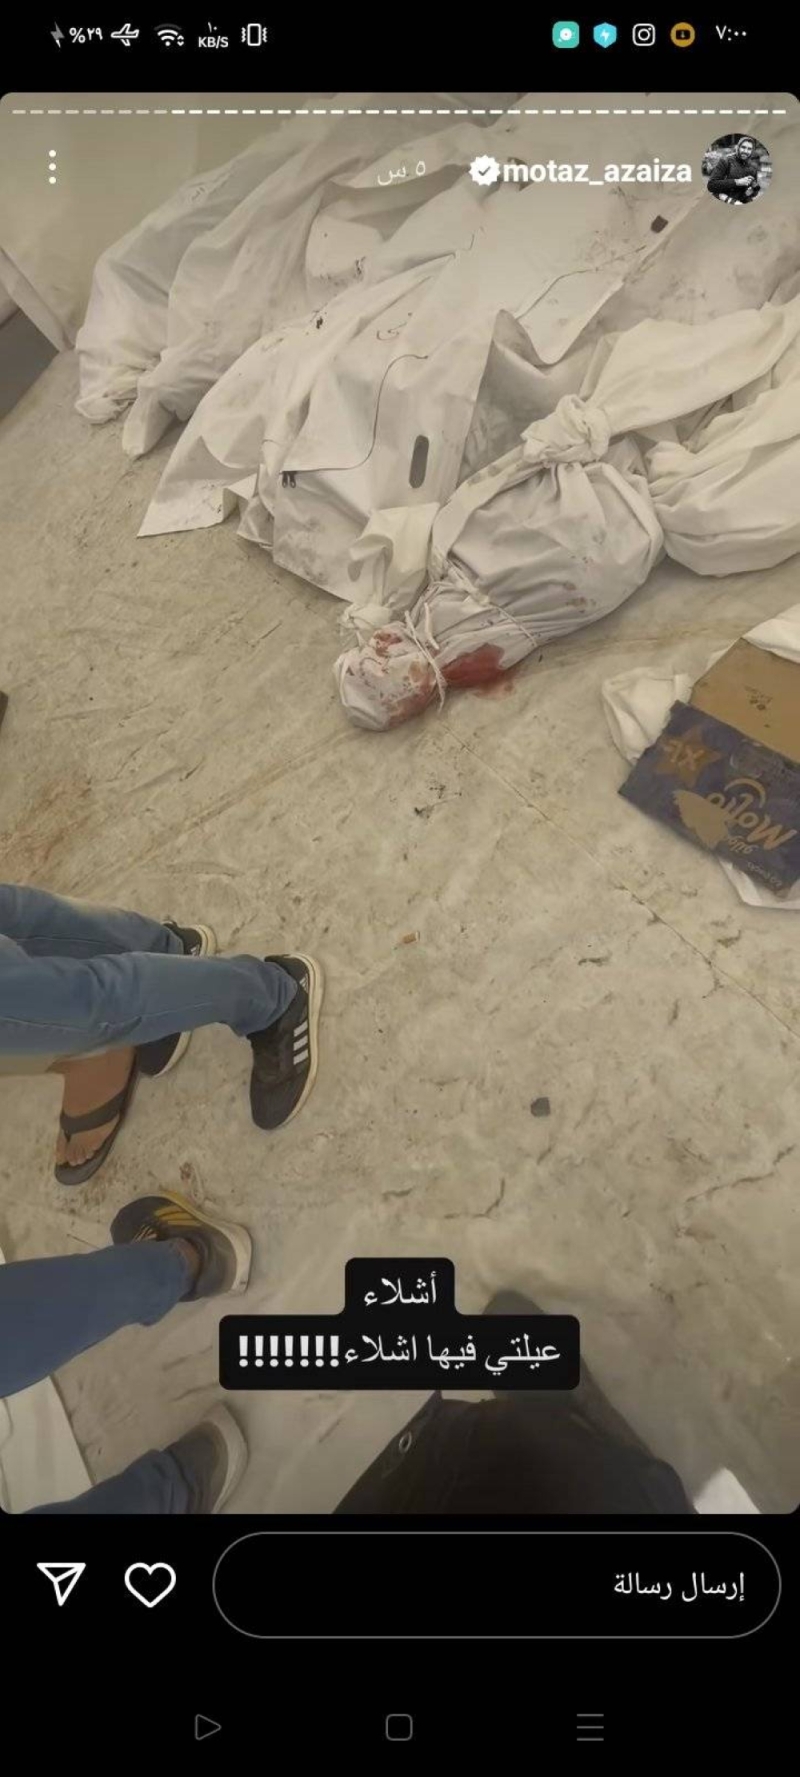 شاهد: صحفي فلسطيني ذهب لتغطية القصف الإسرائيلي على غزة يجد عائلته أشلاء تحت الأنقاض